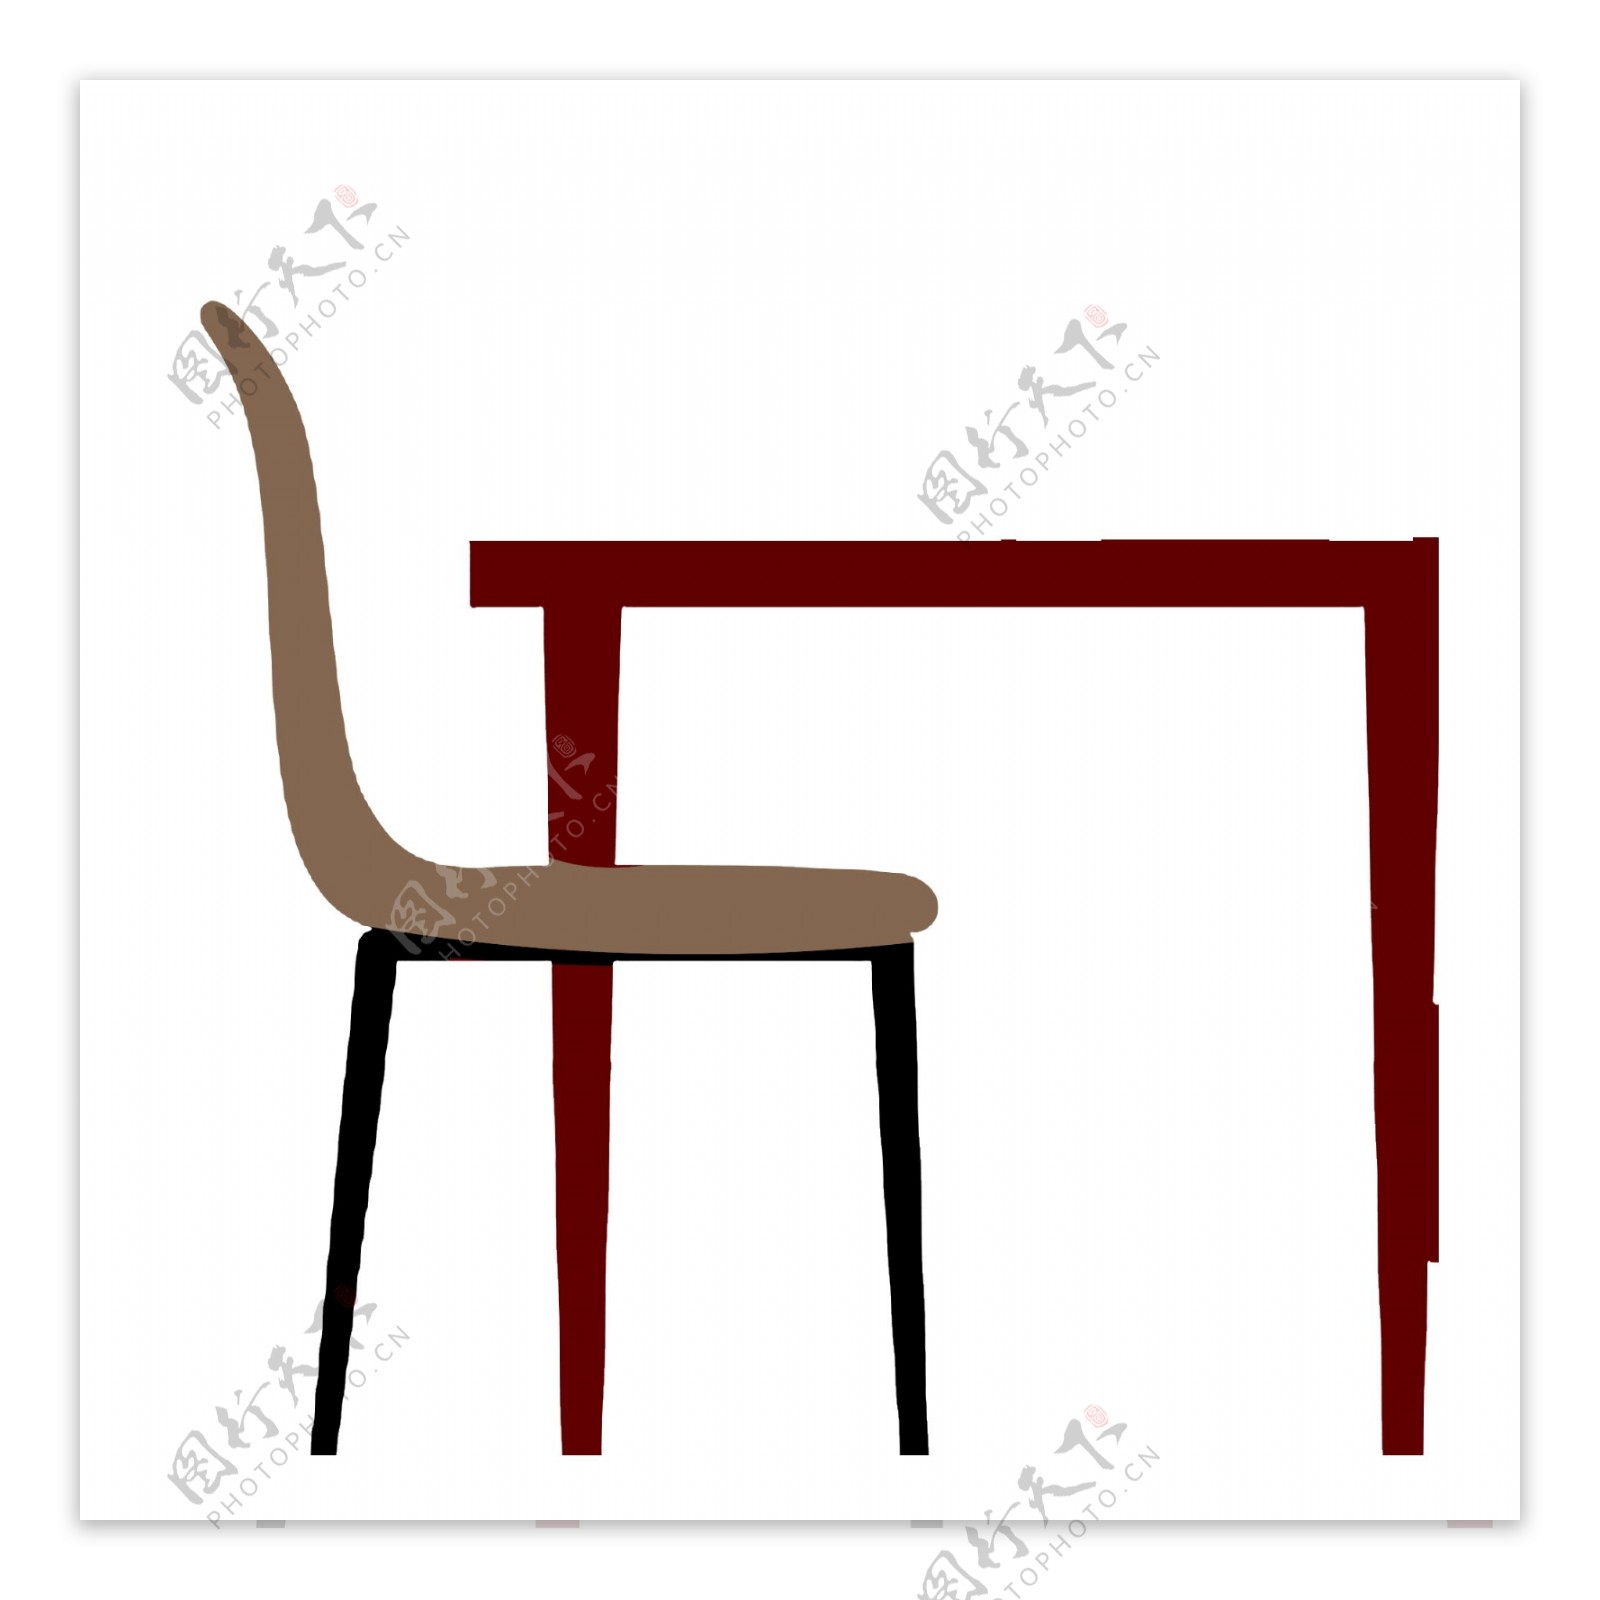 扁平化简约桌子和椅子设计可商用元素